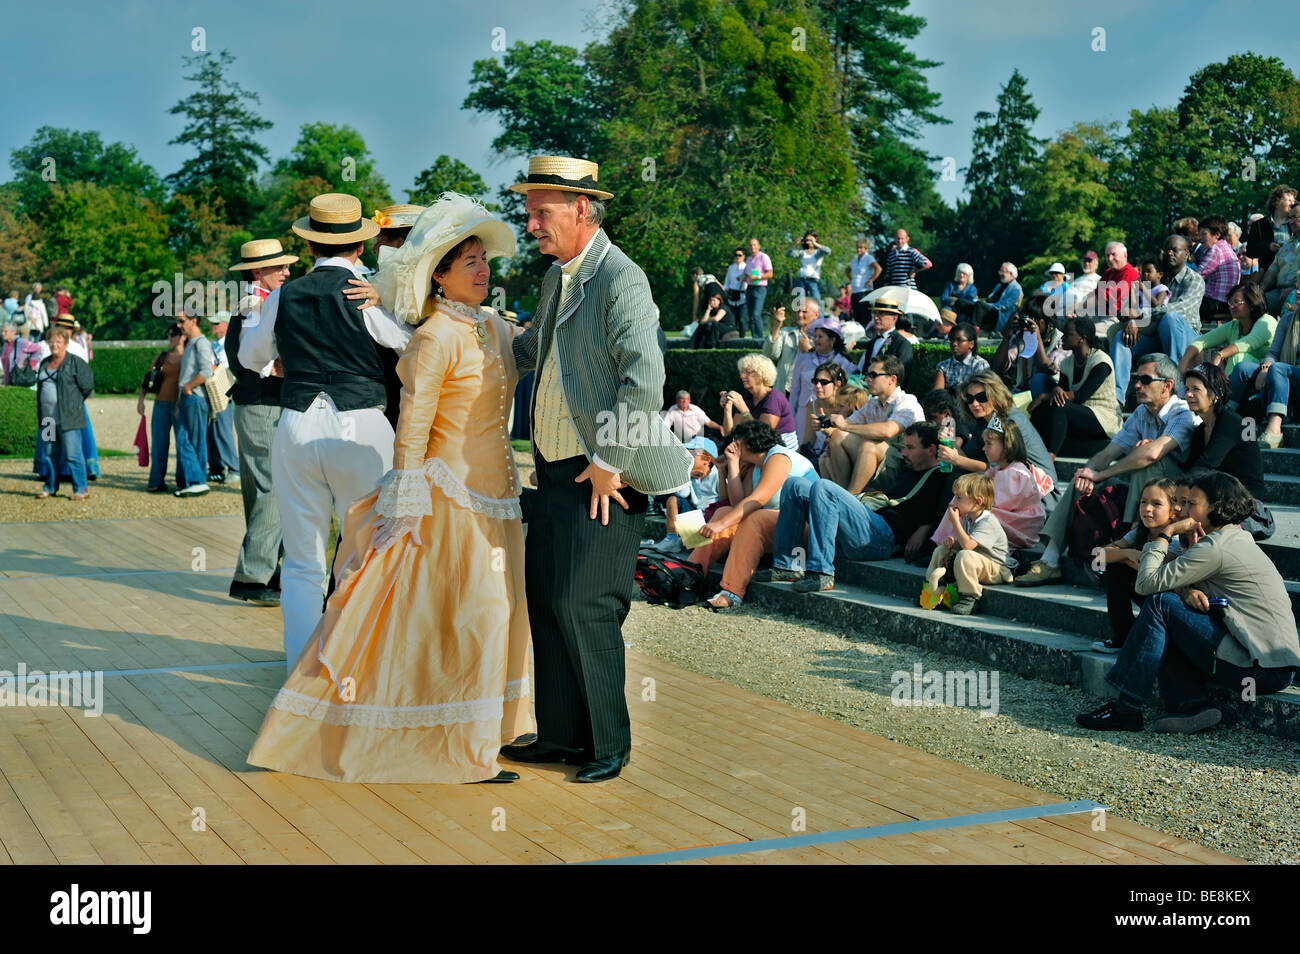 Parigi, Francia - udienza ai turisti che guardano un evento di ballo, vestito in costume d'epoca, vestito da abito, ballo delle coppie francesi, cappelli da donna, vecchio, gruppo Foto Stock